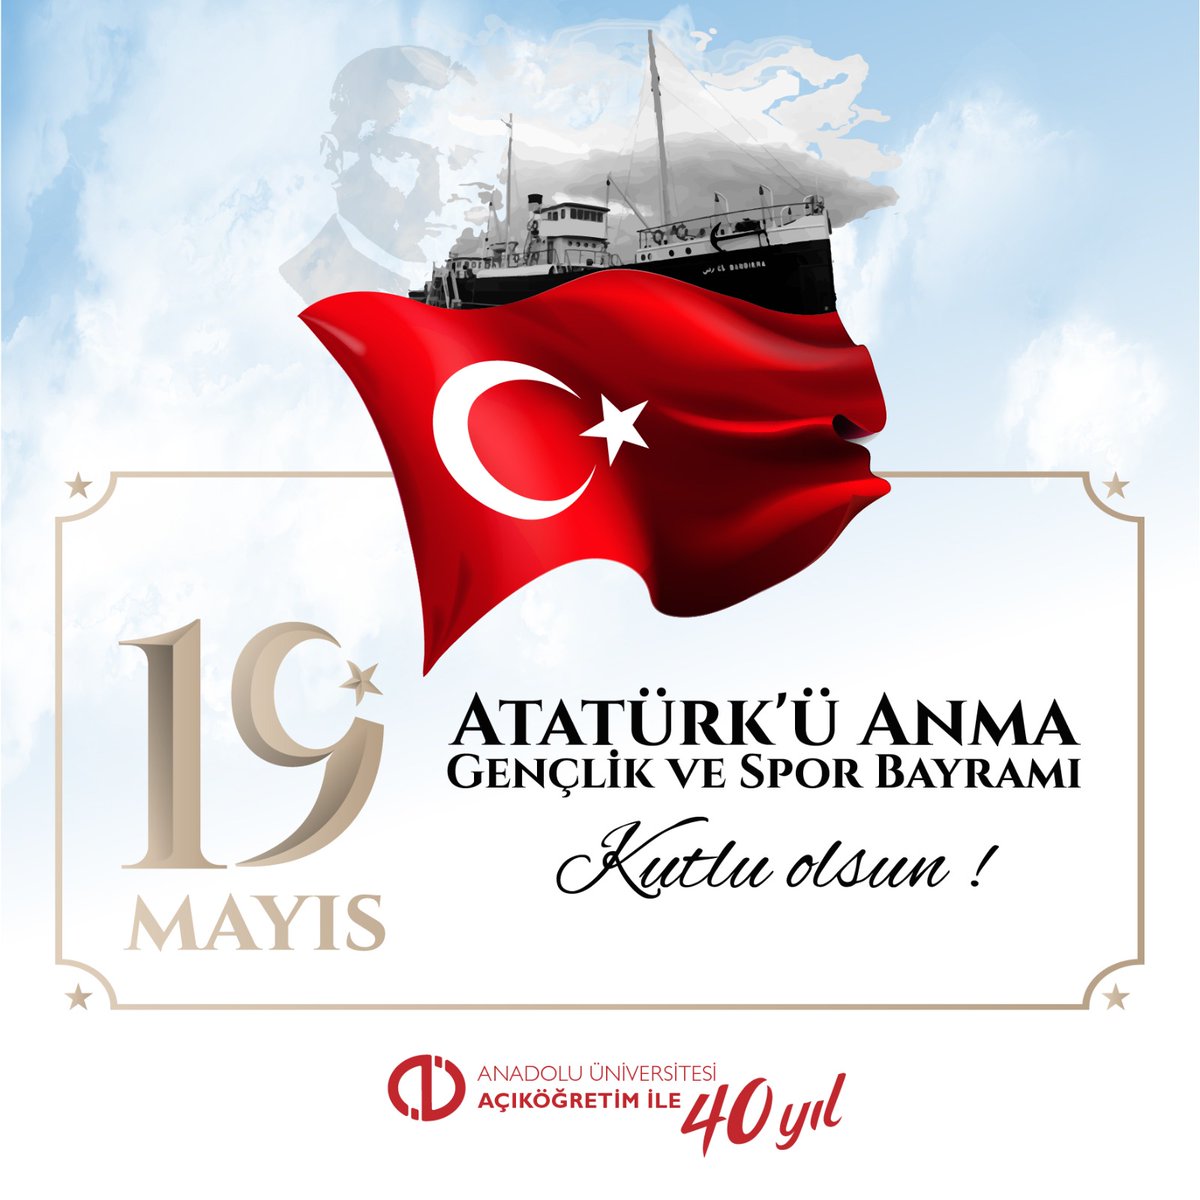 🇹🇷 19 Mayıs Atatürk'ü Anma, Gençlik ve Spor Bayramımız kutlu olsun! #AnadoluÜniversitesi #Aös #AçıköğretimSistemi #19Mayıs